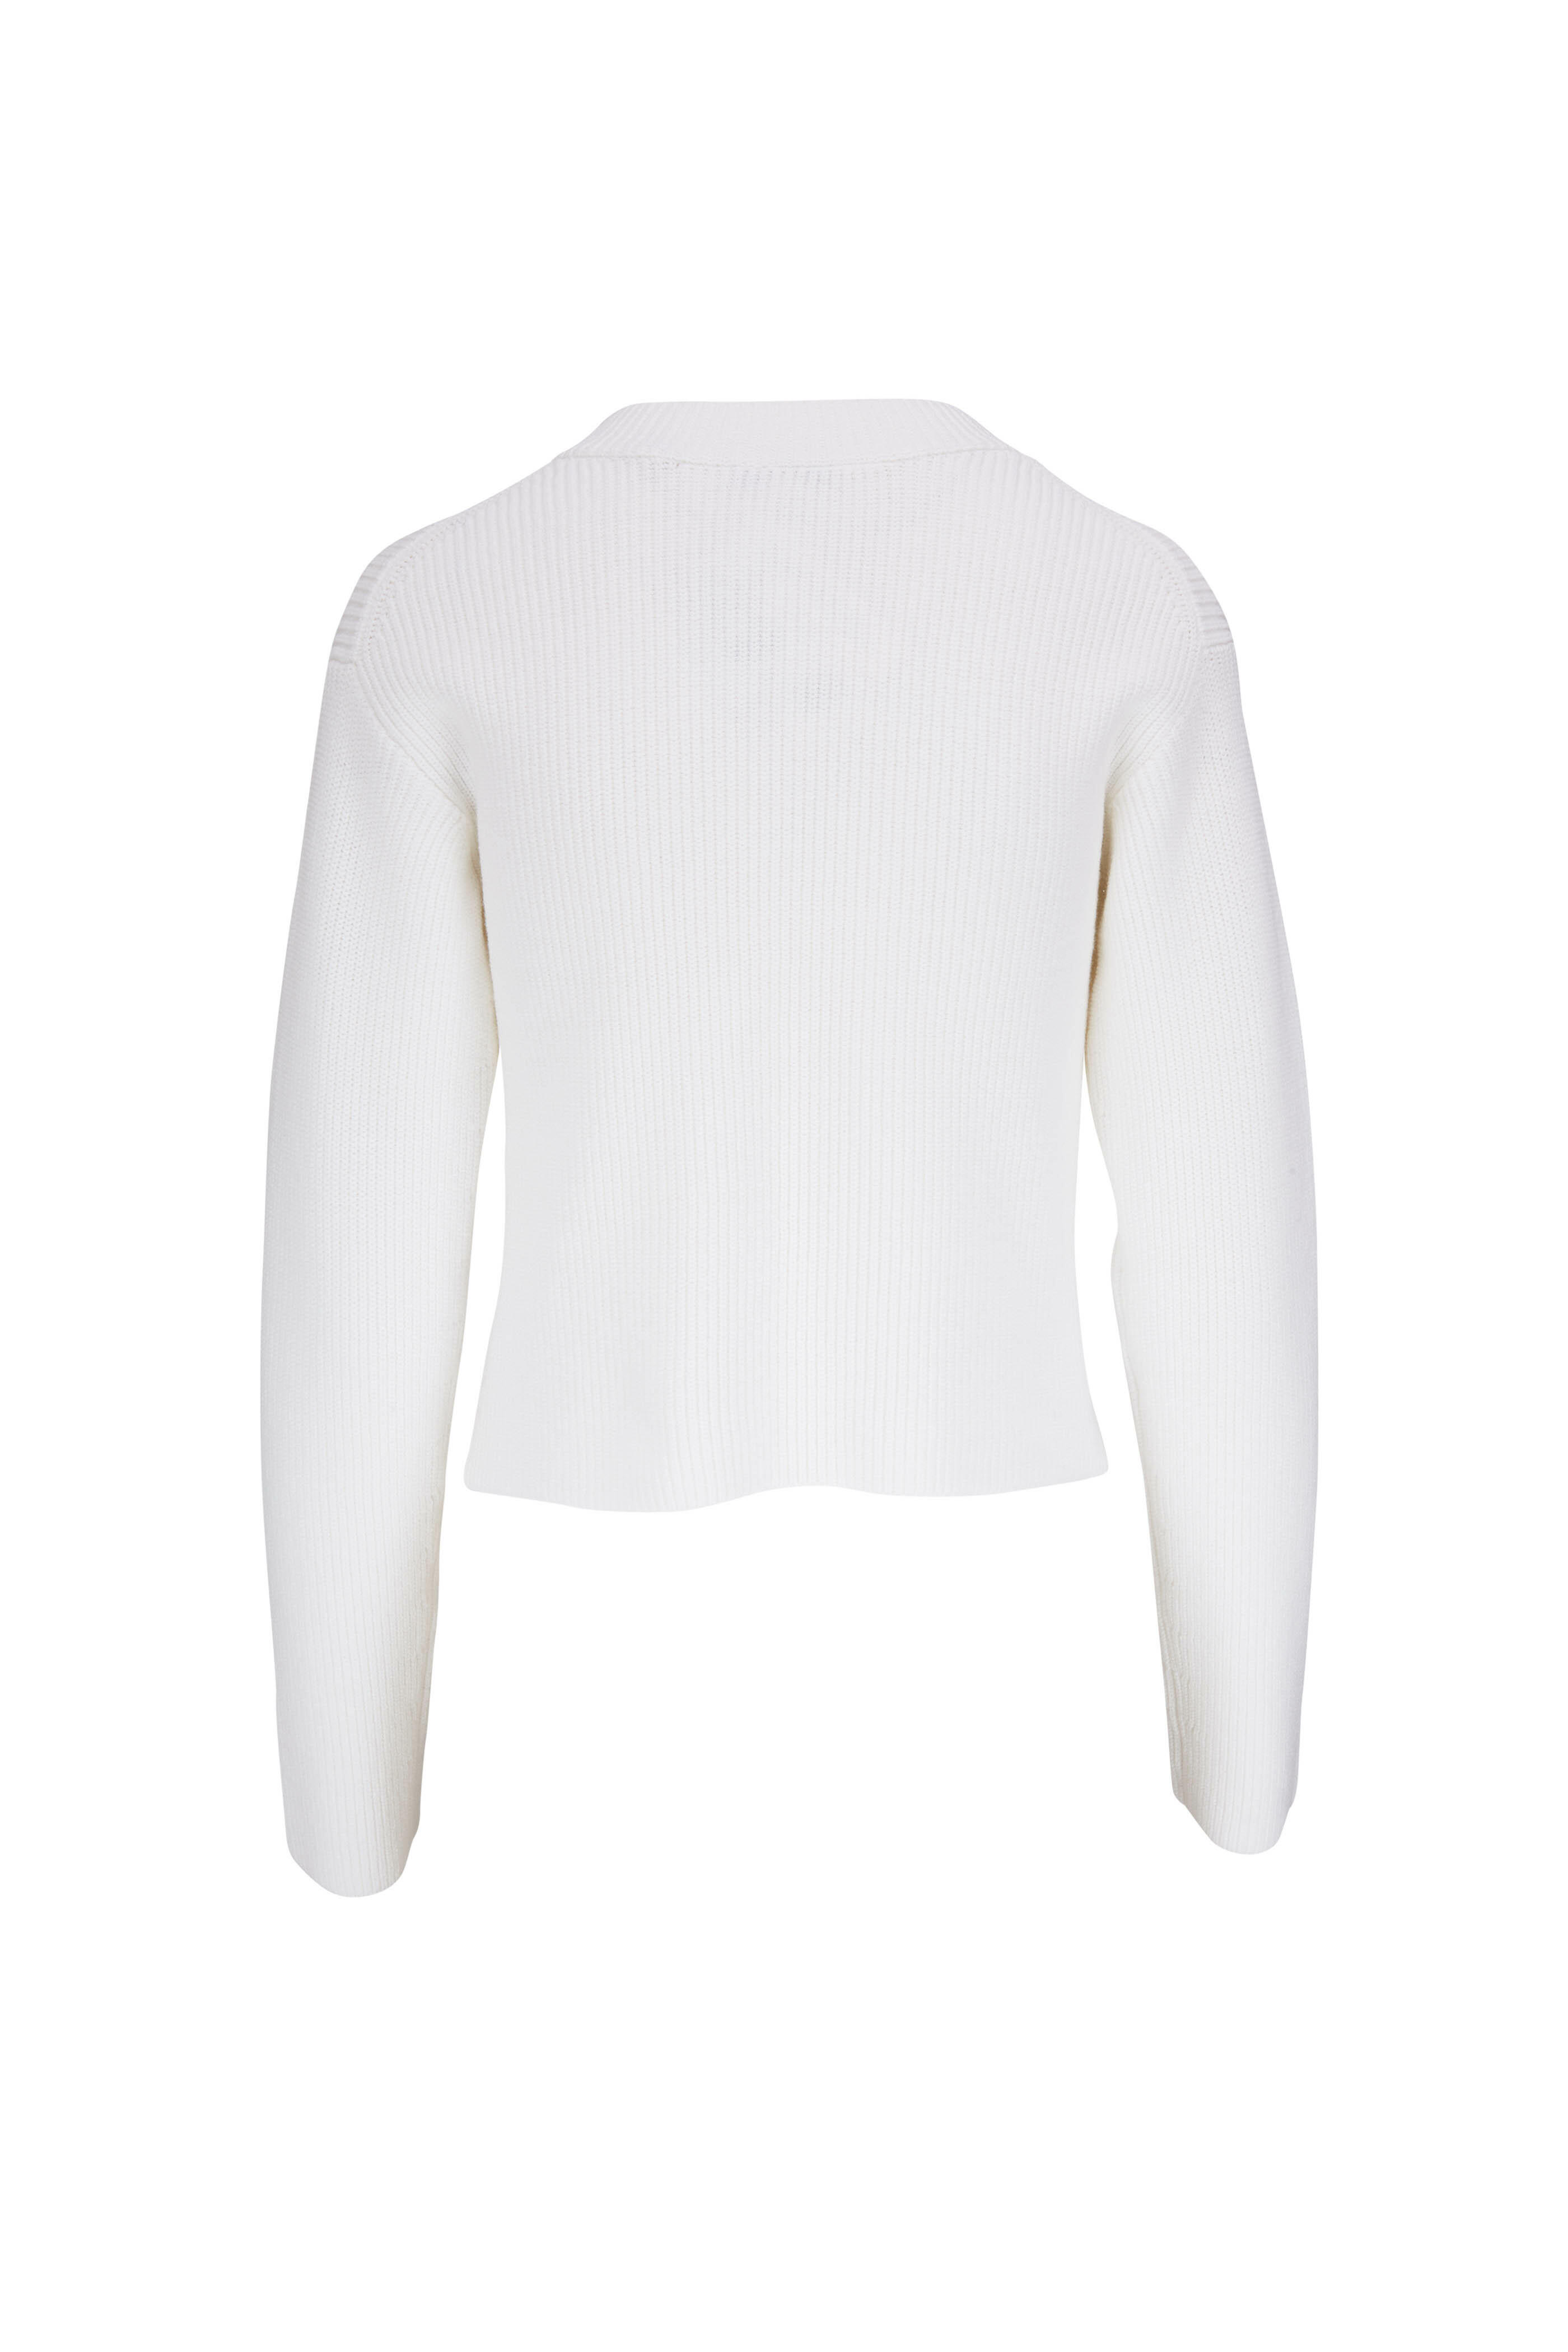 Chewnel Drip Sweater - White